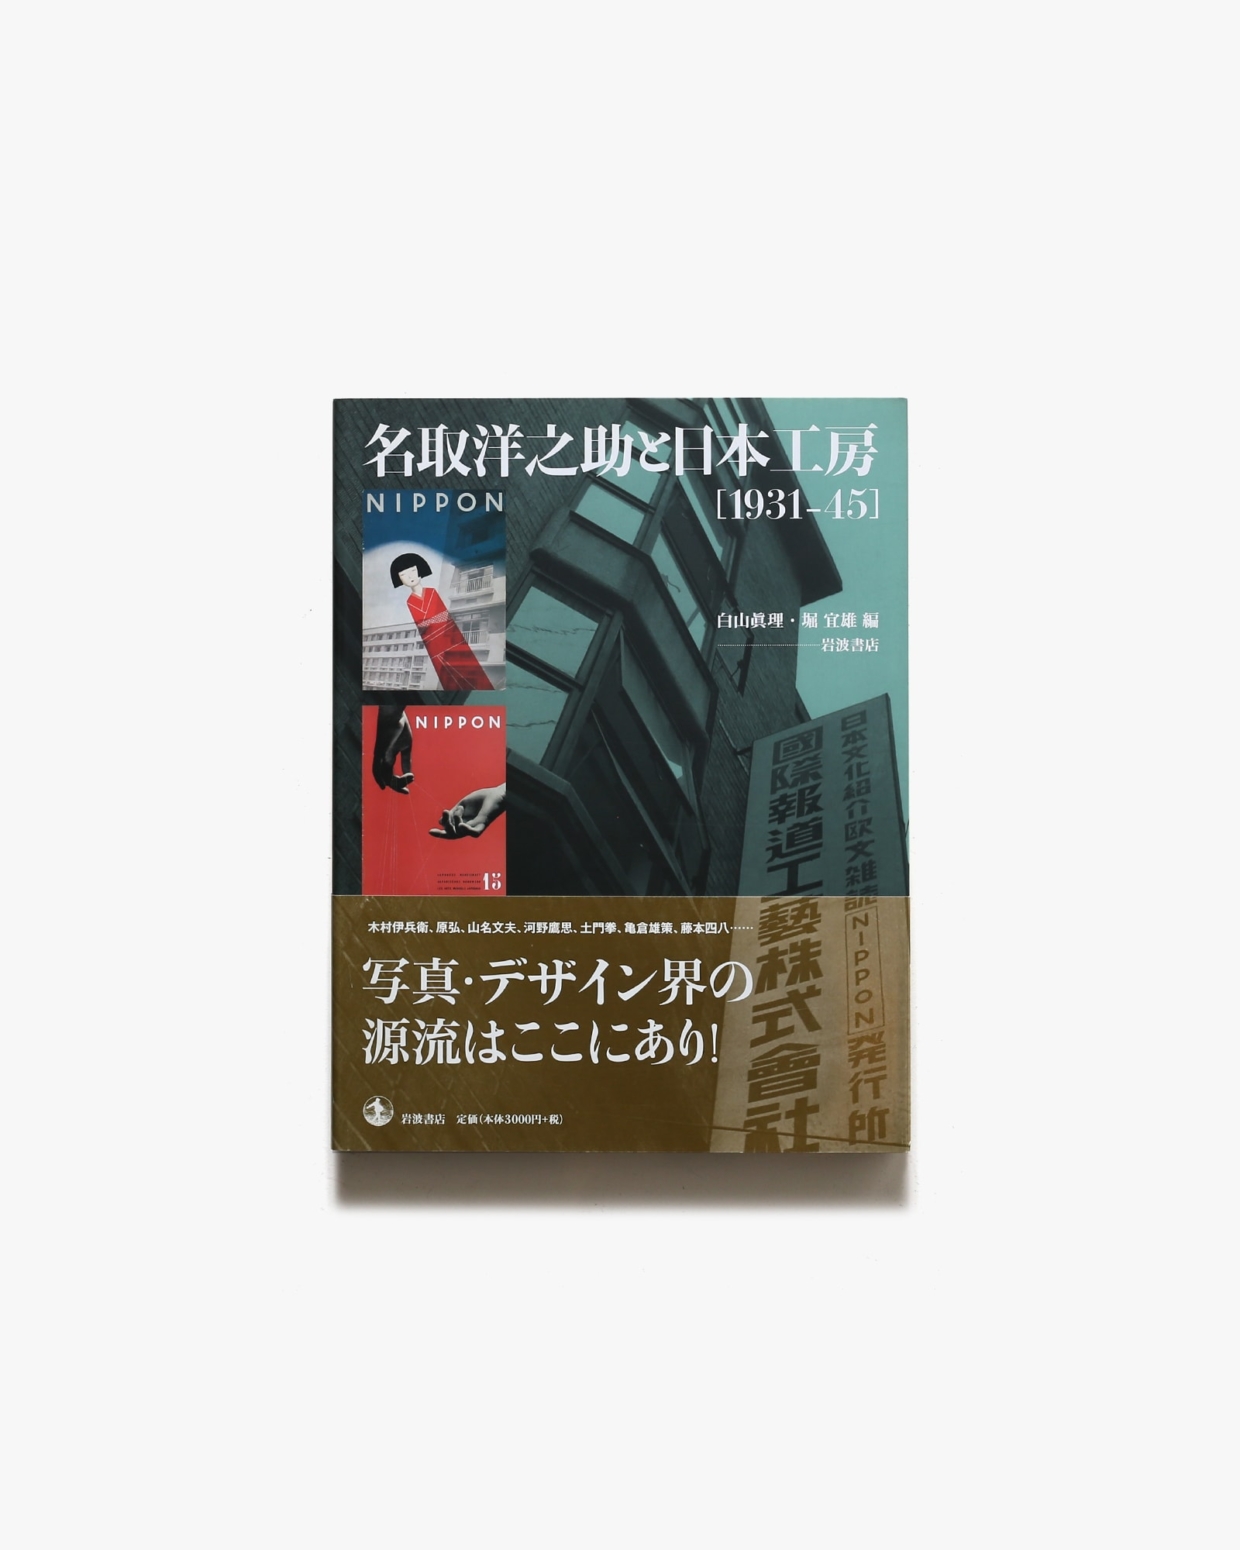 名取洋之助と日本工房 1931-45 | 岩波書店